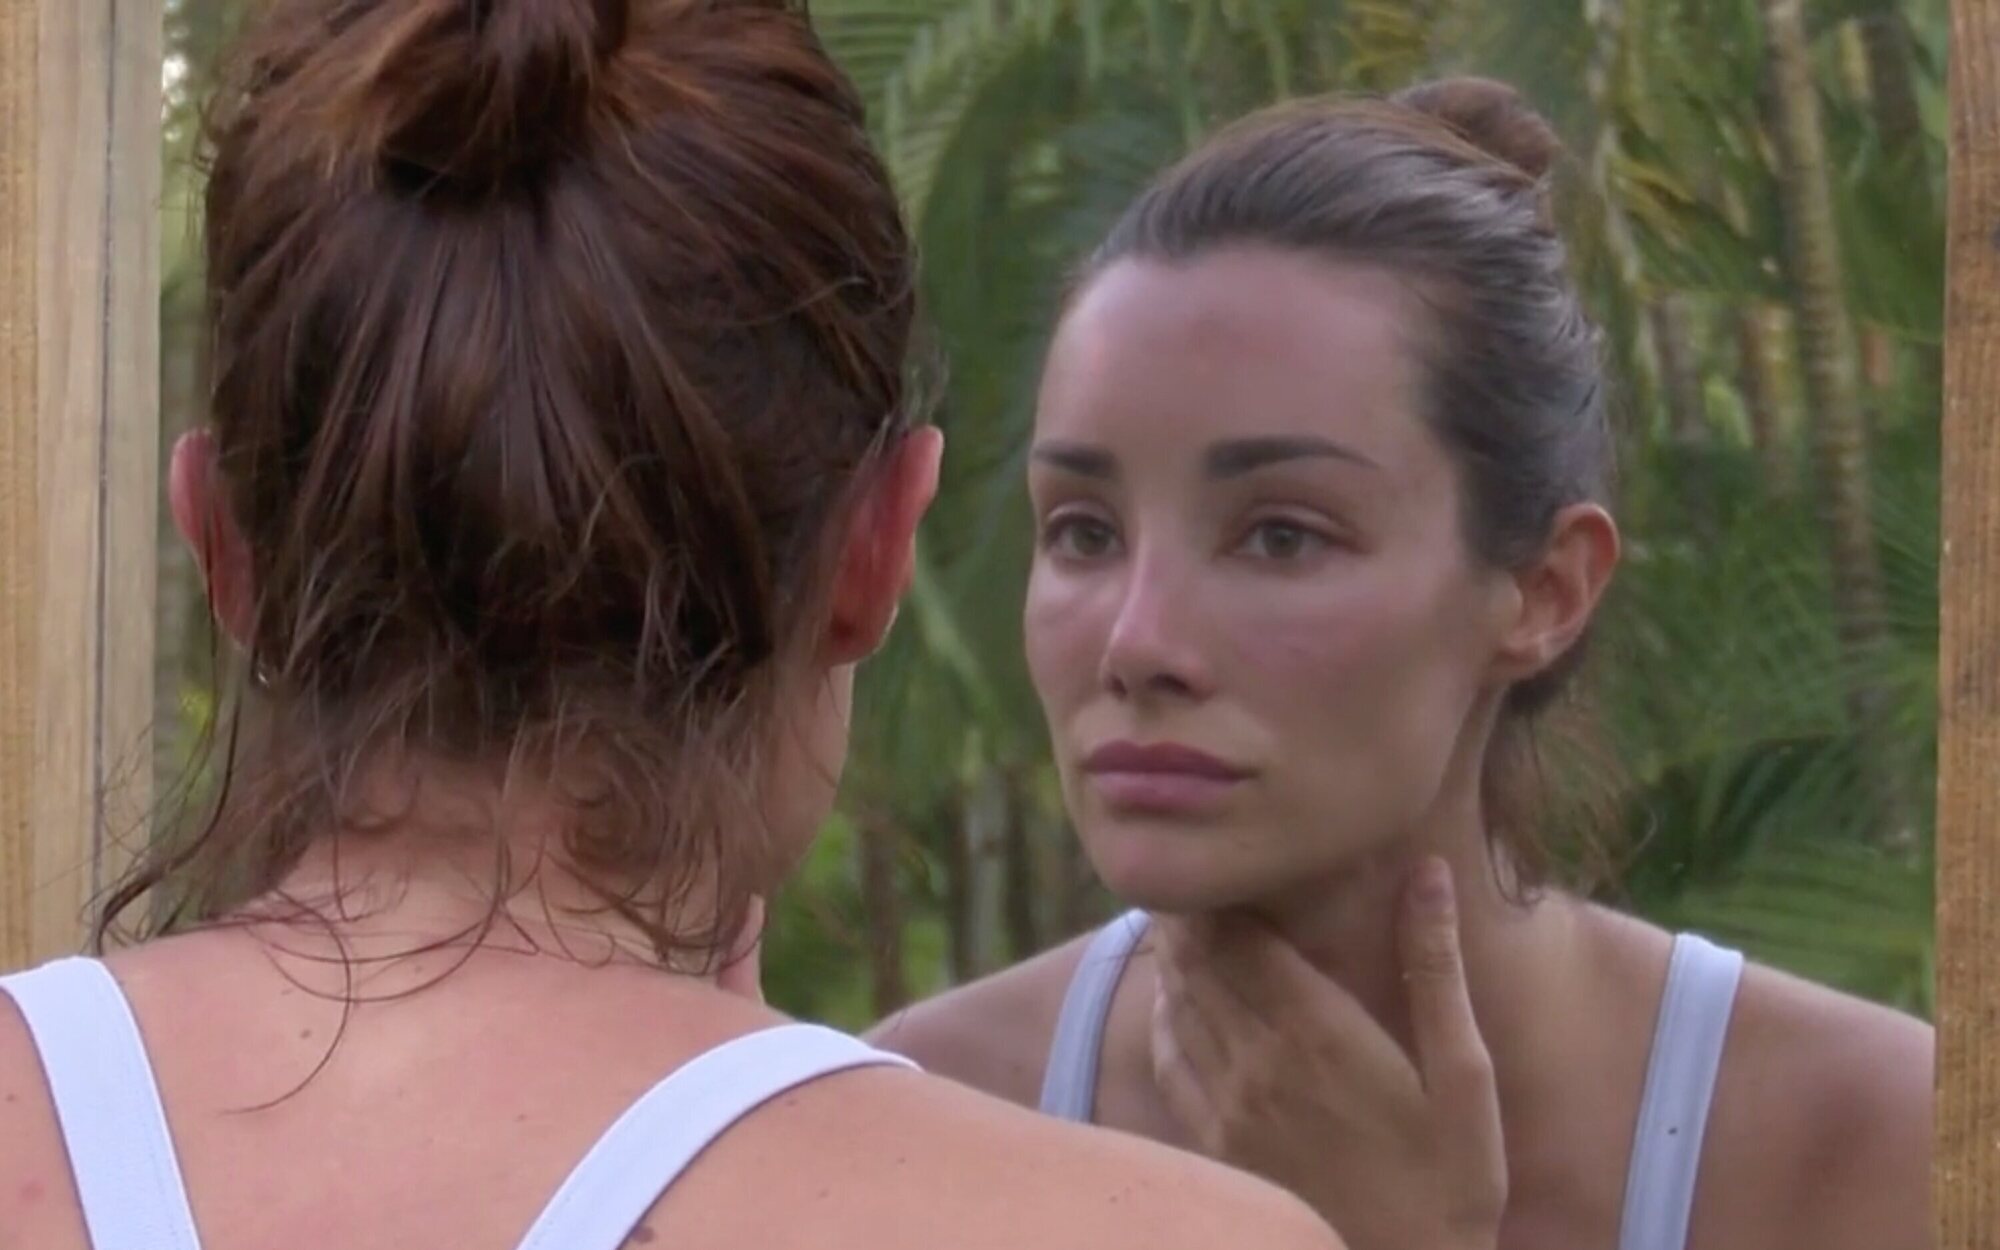 La reacción de Adara Molinero al verse la cara deformada por una alergia en 'Supervivientes': "Qué horror"